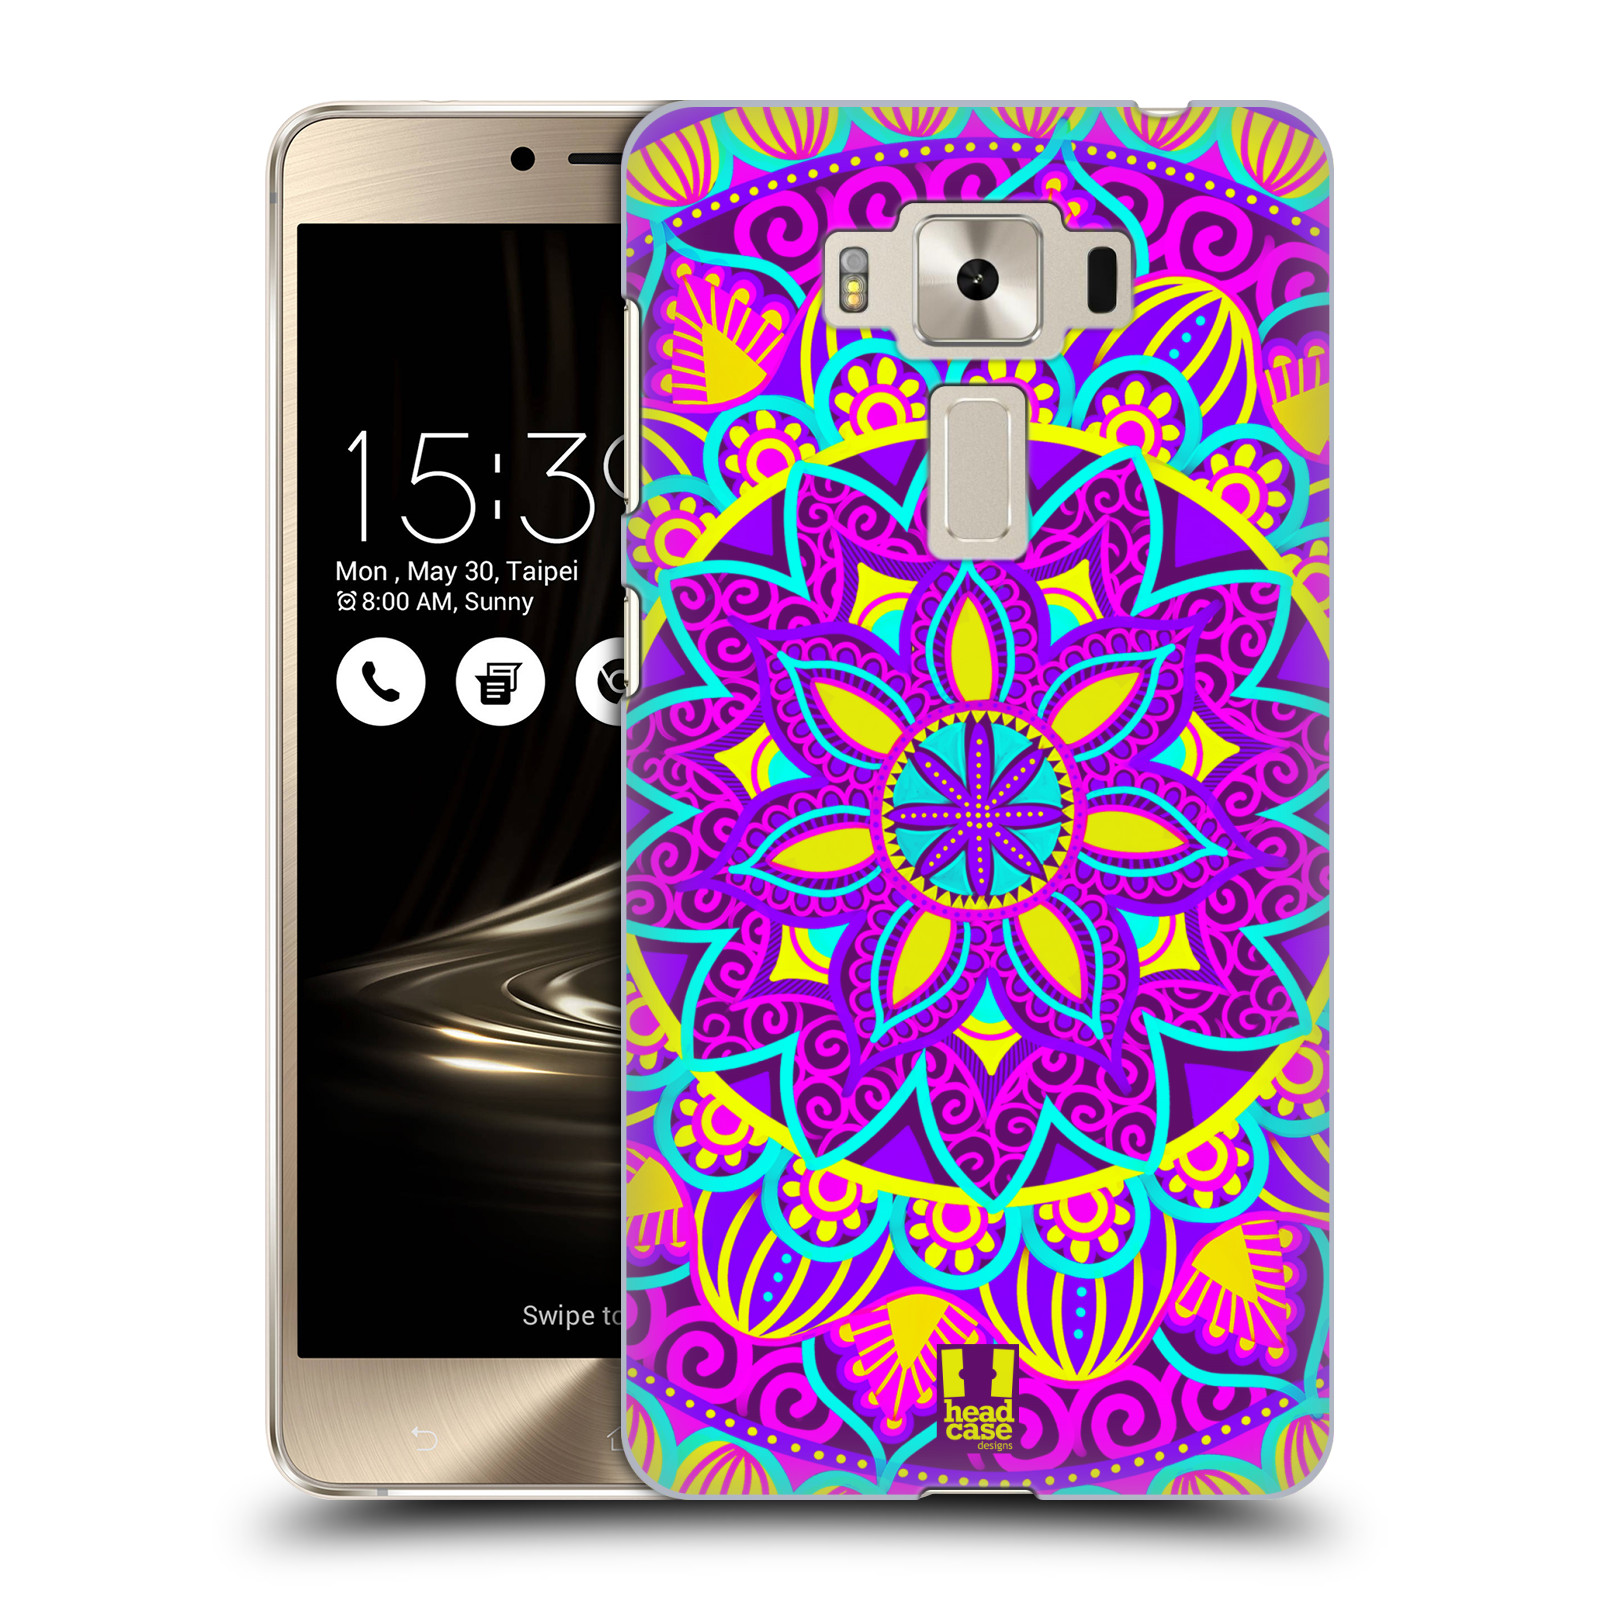 HEAD CASE plastový obal na mobil Asus Zenfone 3 DELUXE ZS550KL vzor Indie Mandala květinový motiv FIALOVÁ KVĚTINA